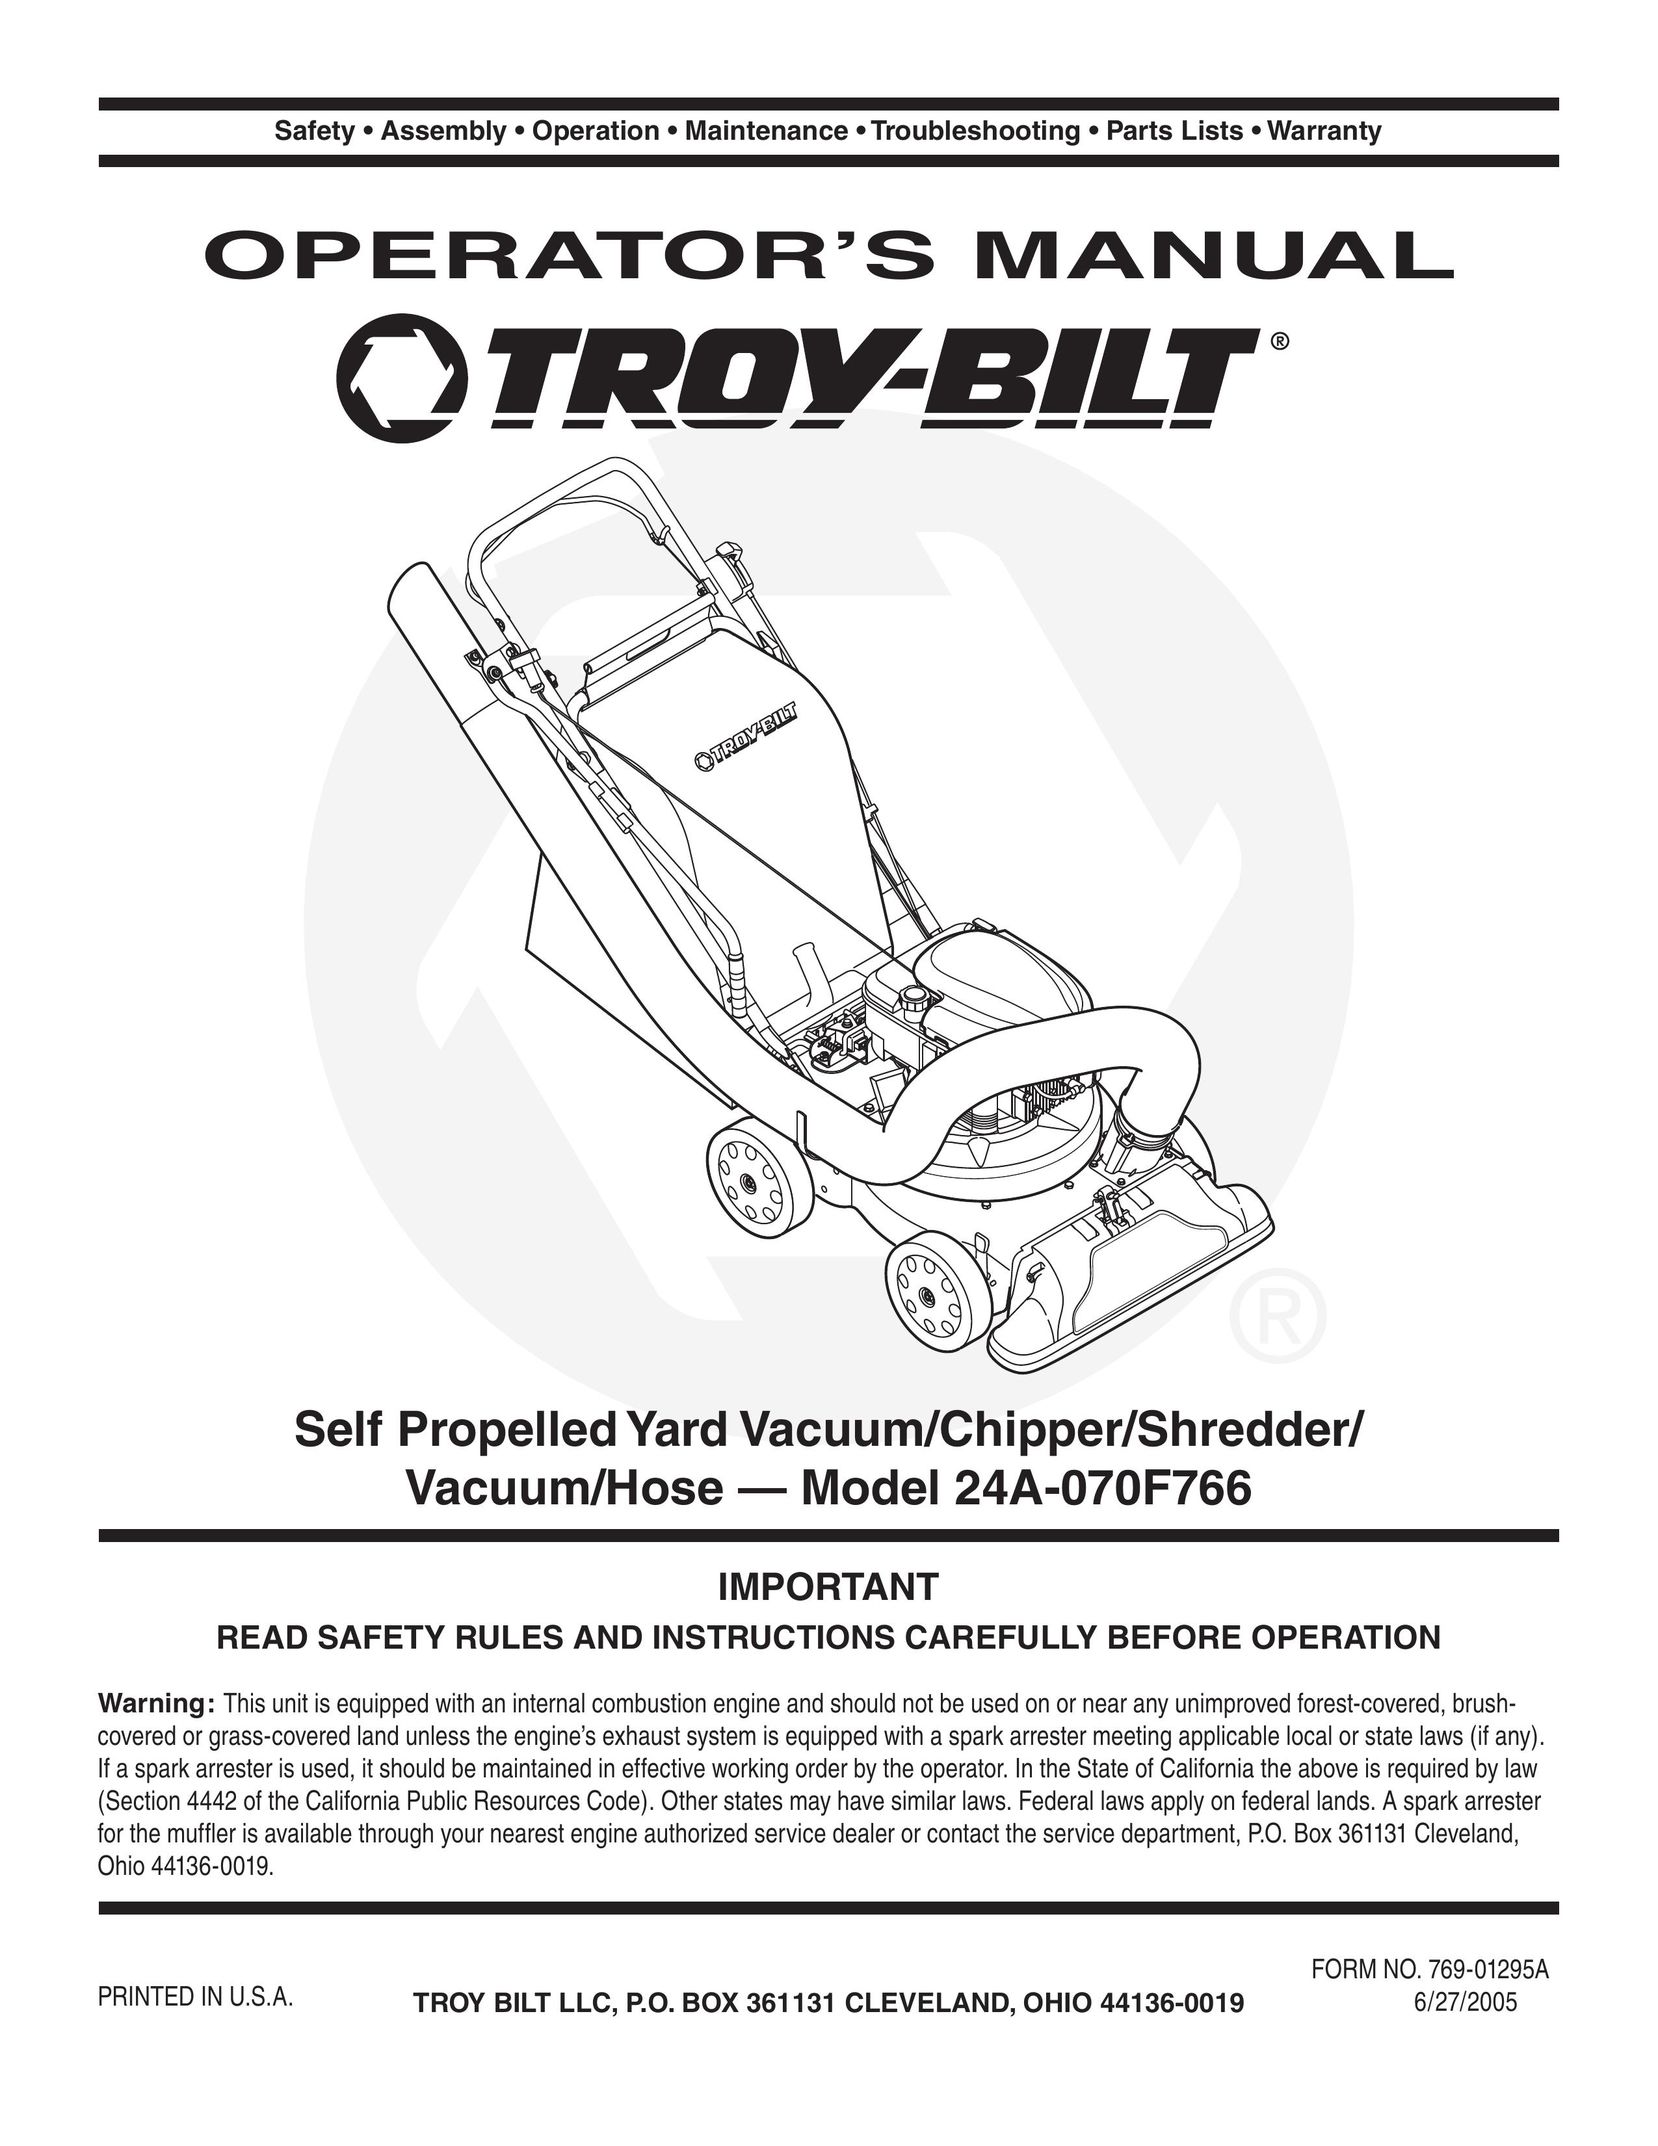 Troy-Bilt 24A-070F768 Vacuum Cleaner User Manual